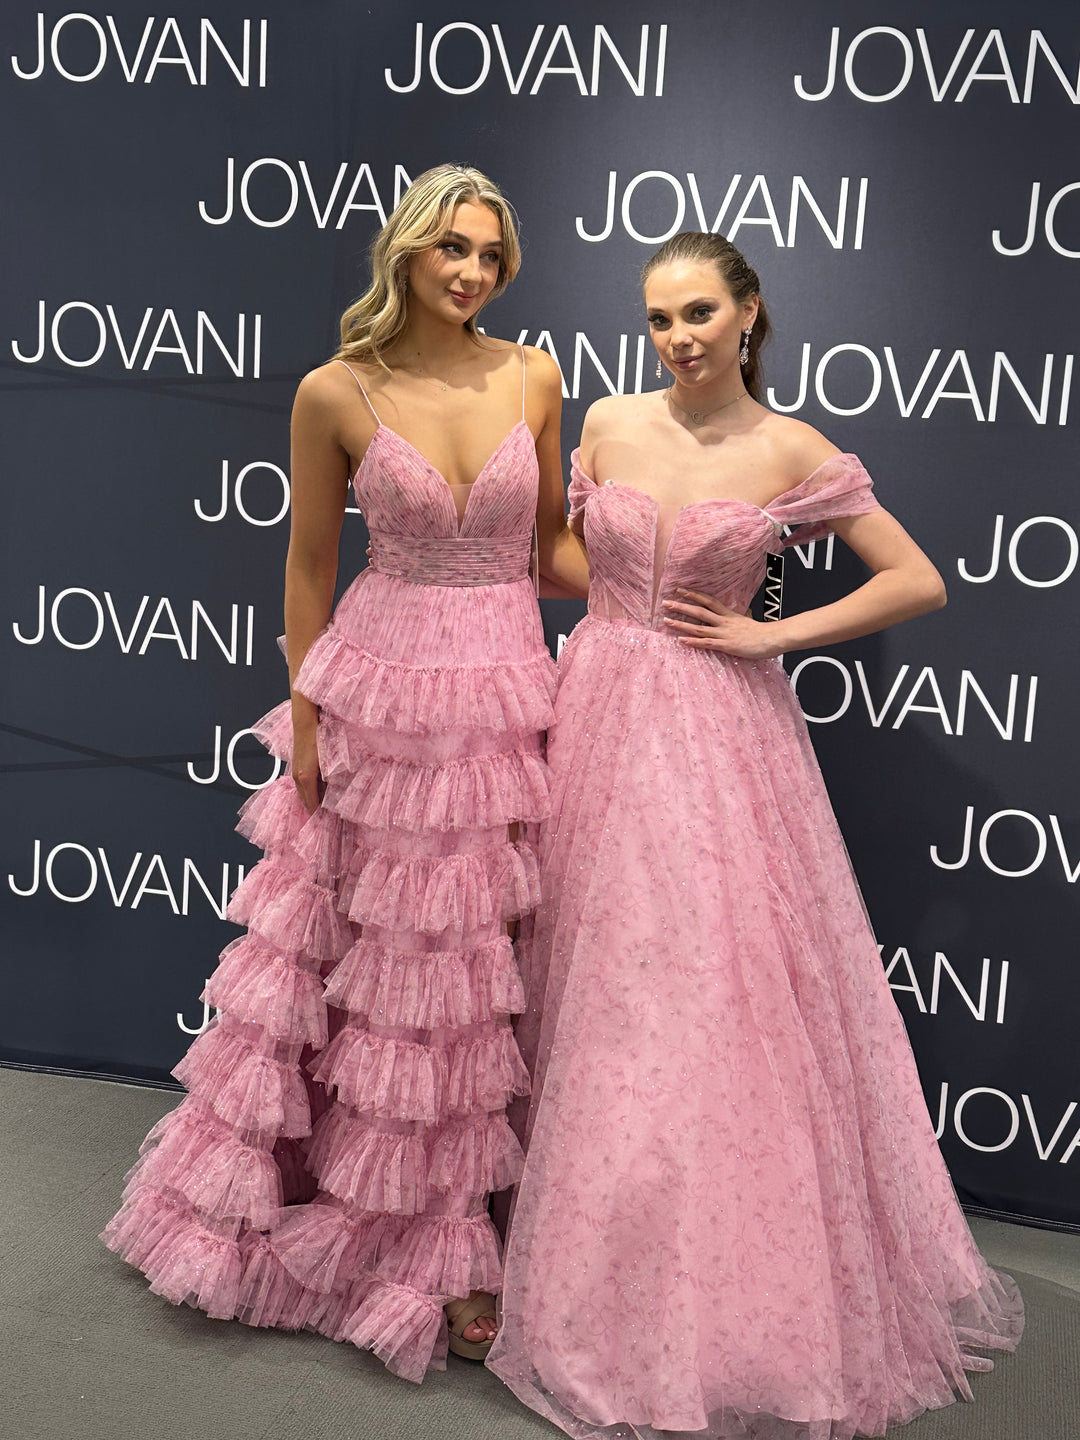 Jovani: JVN36581 Dress